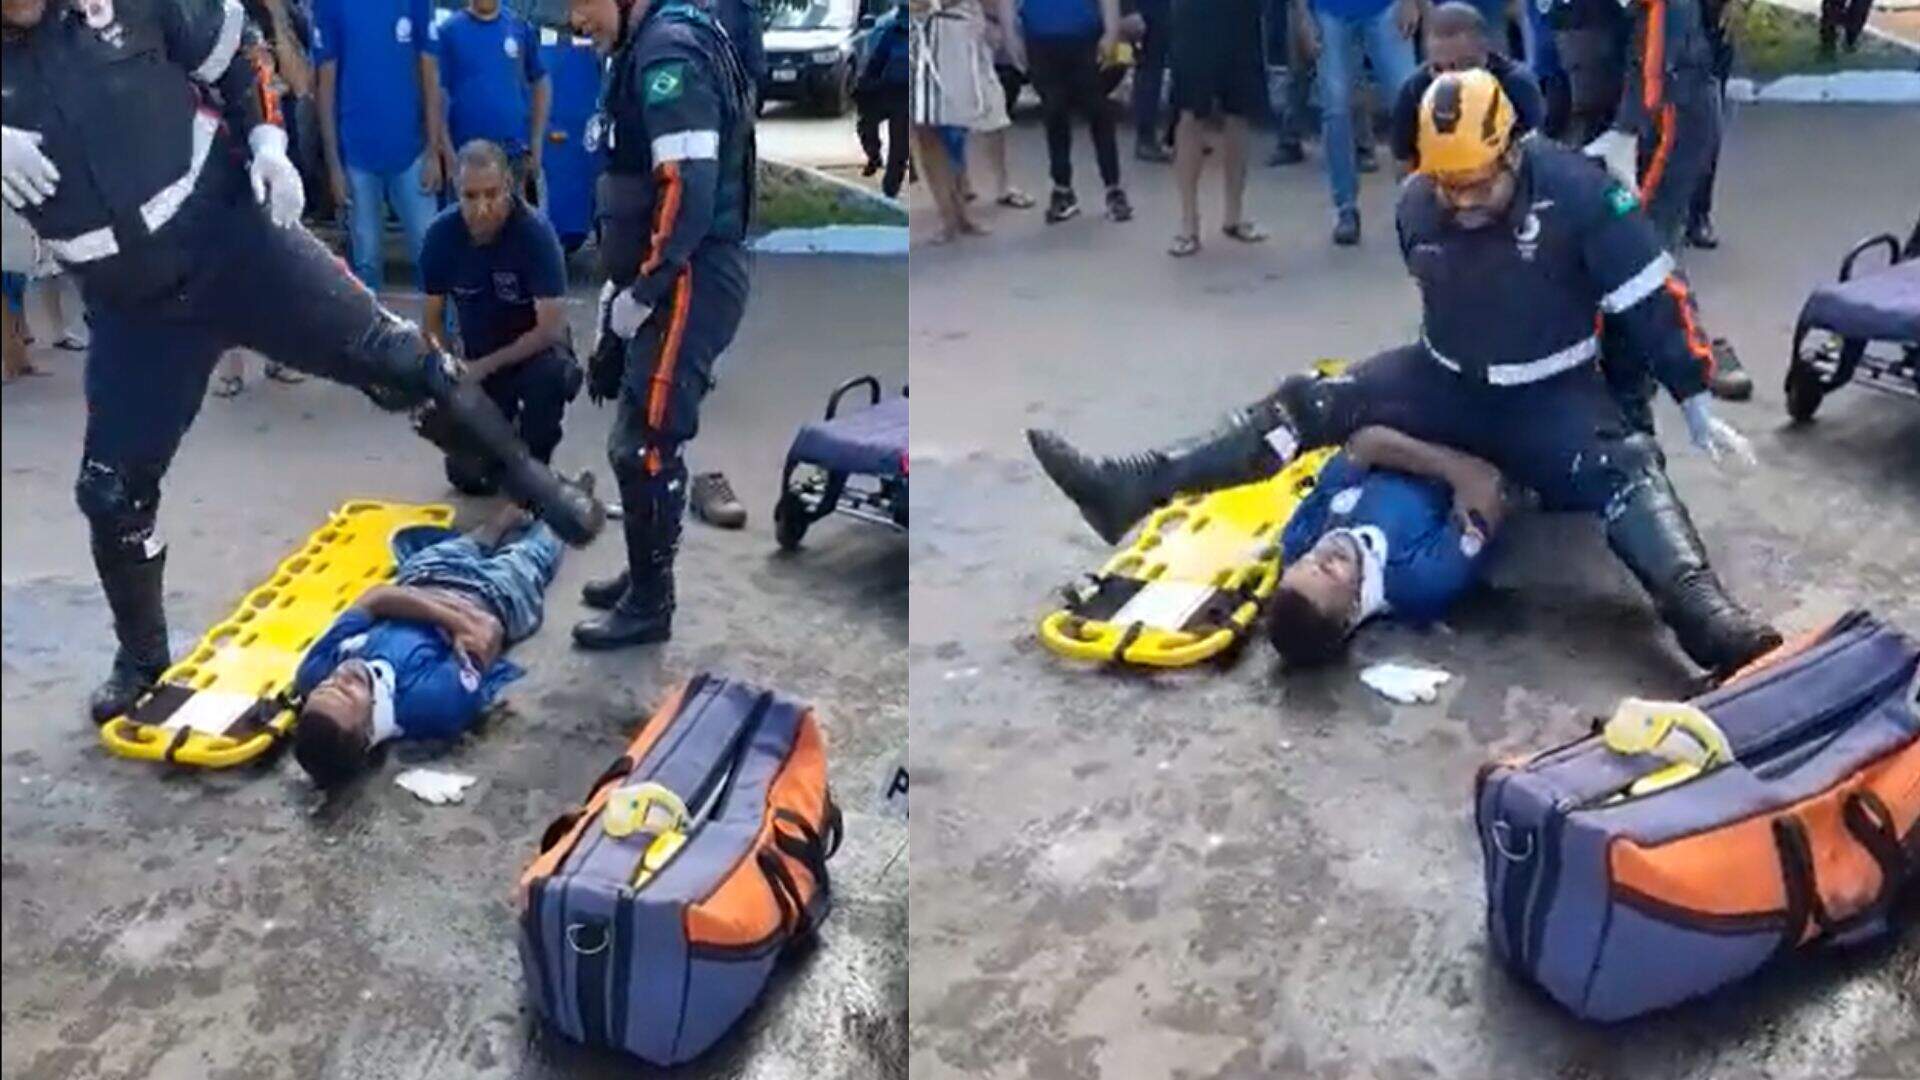 VÍDEO: Durante atendimento, socorrista do SAMU escorrega e cai em cima de vítima